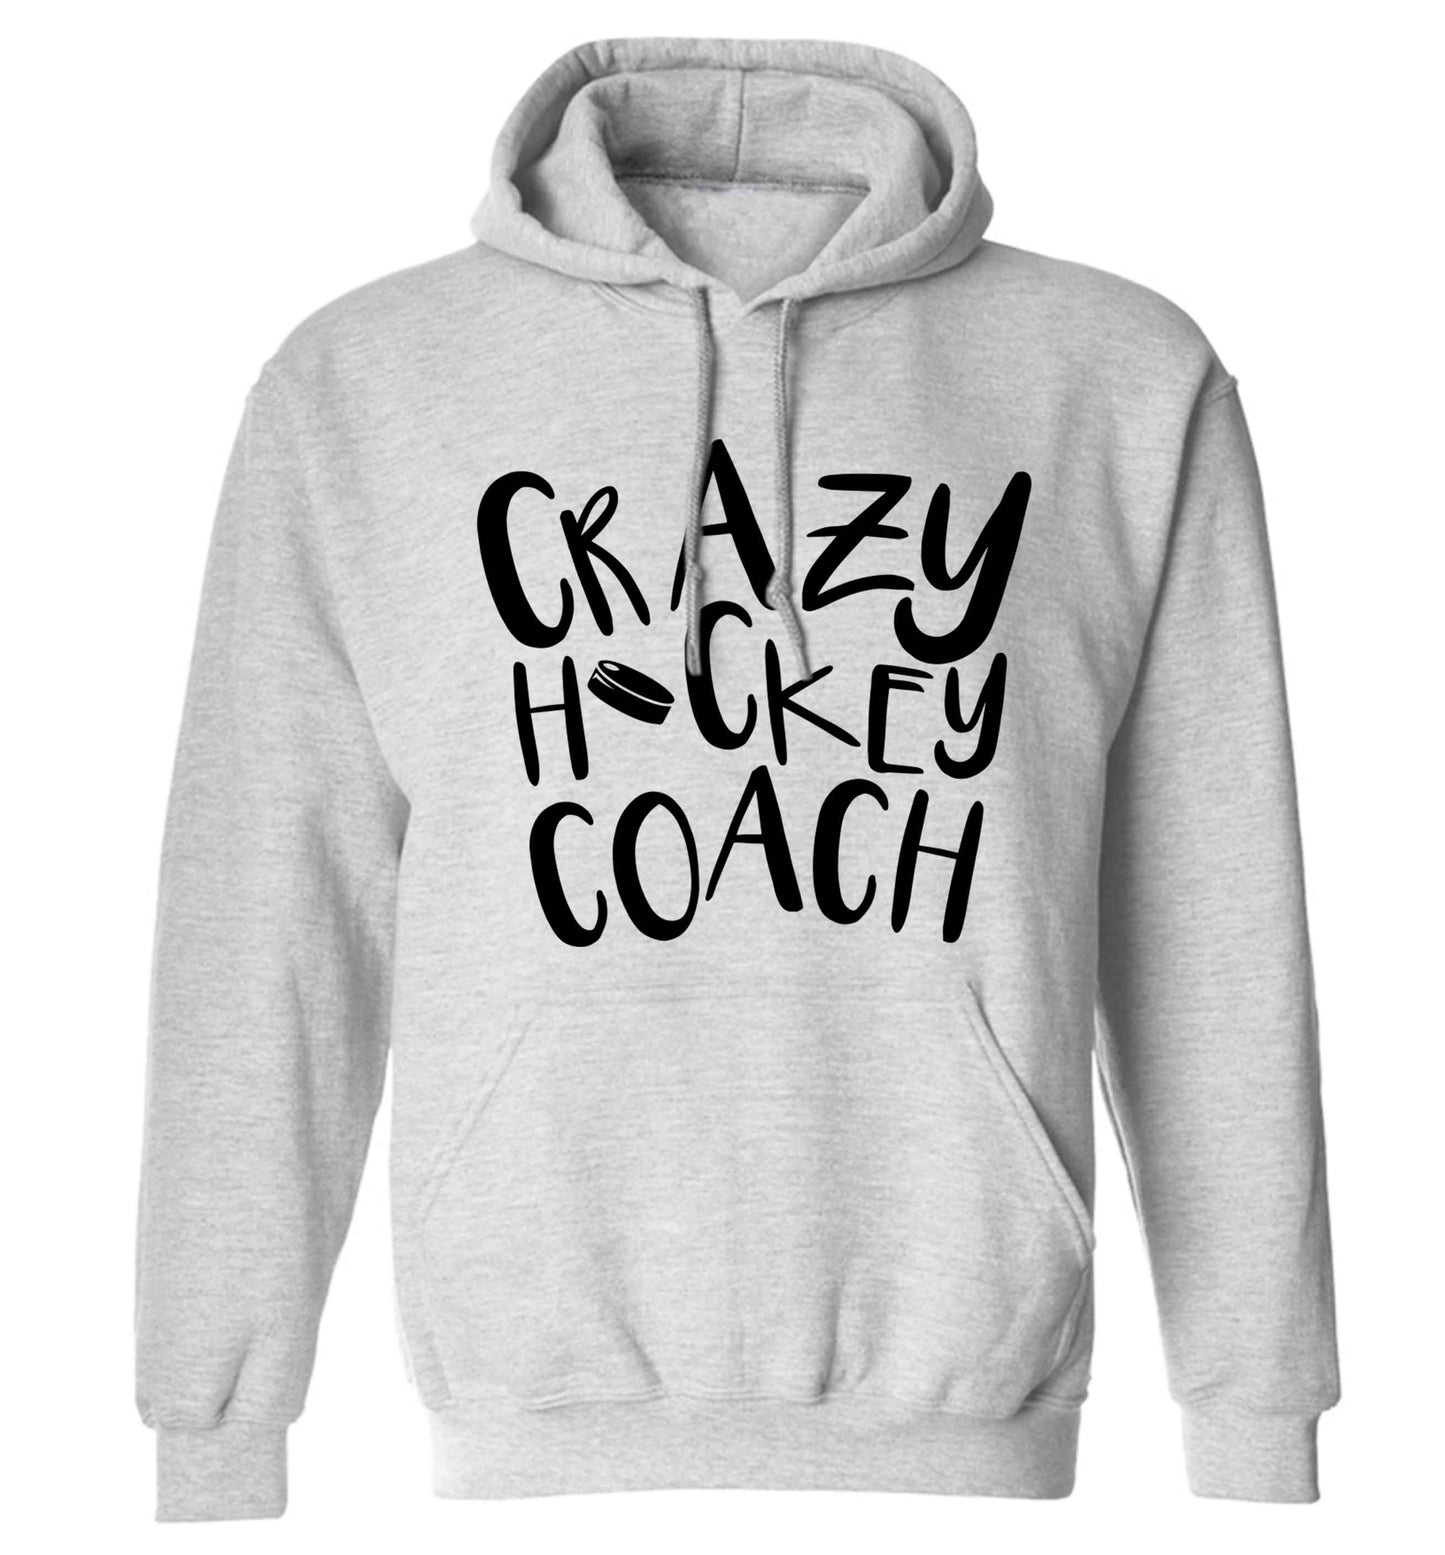 Crazy hockey coach adults unisex grey hoodie 2XL